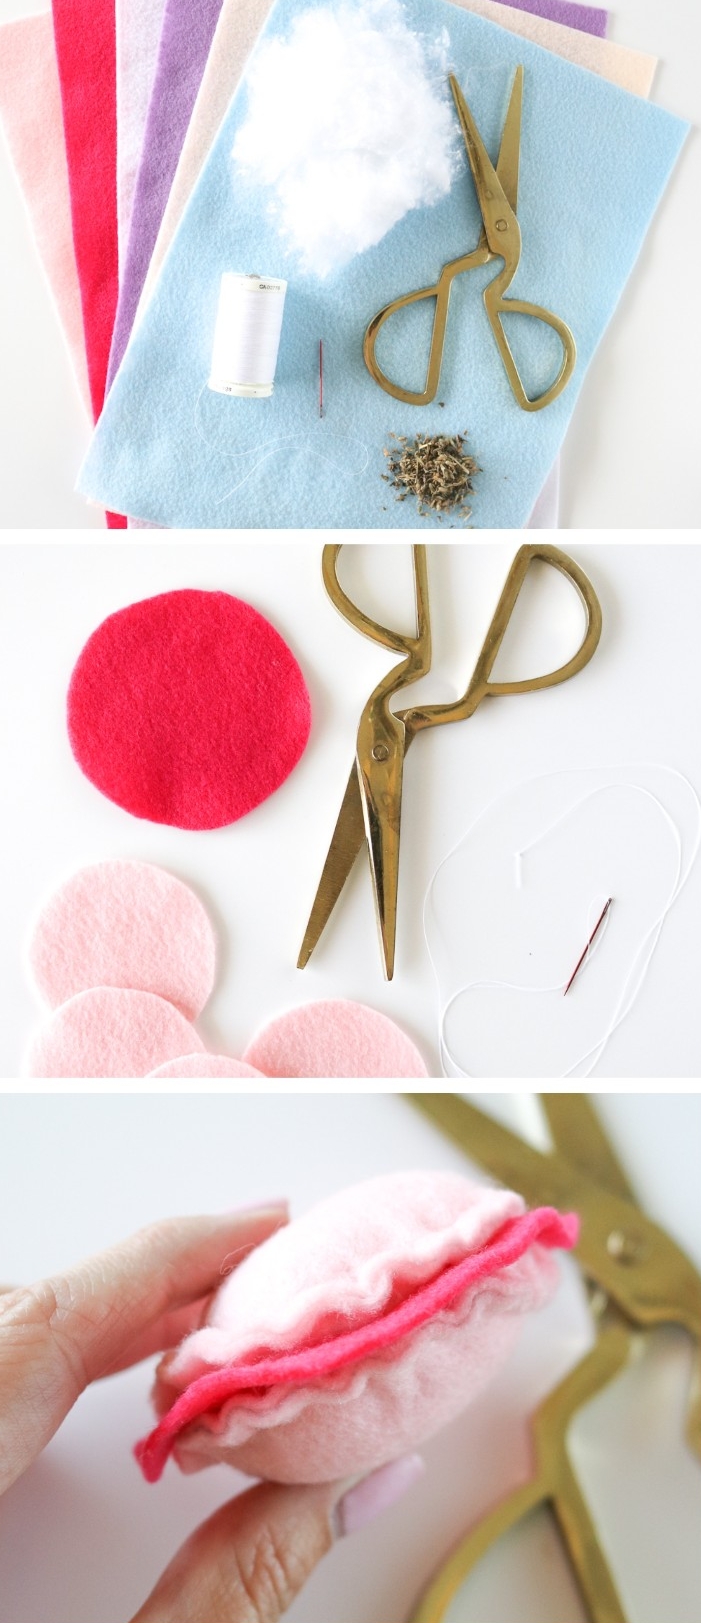 DIY jouet pour chat macaron ludique fabriqué tissu lin